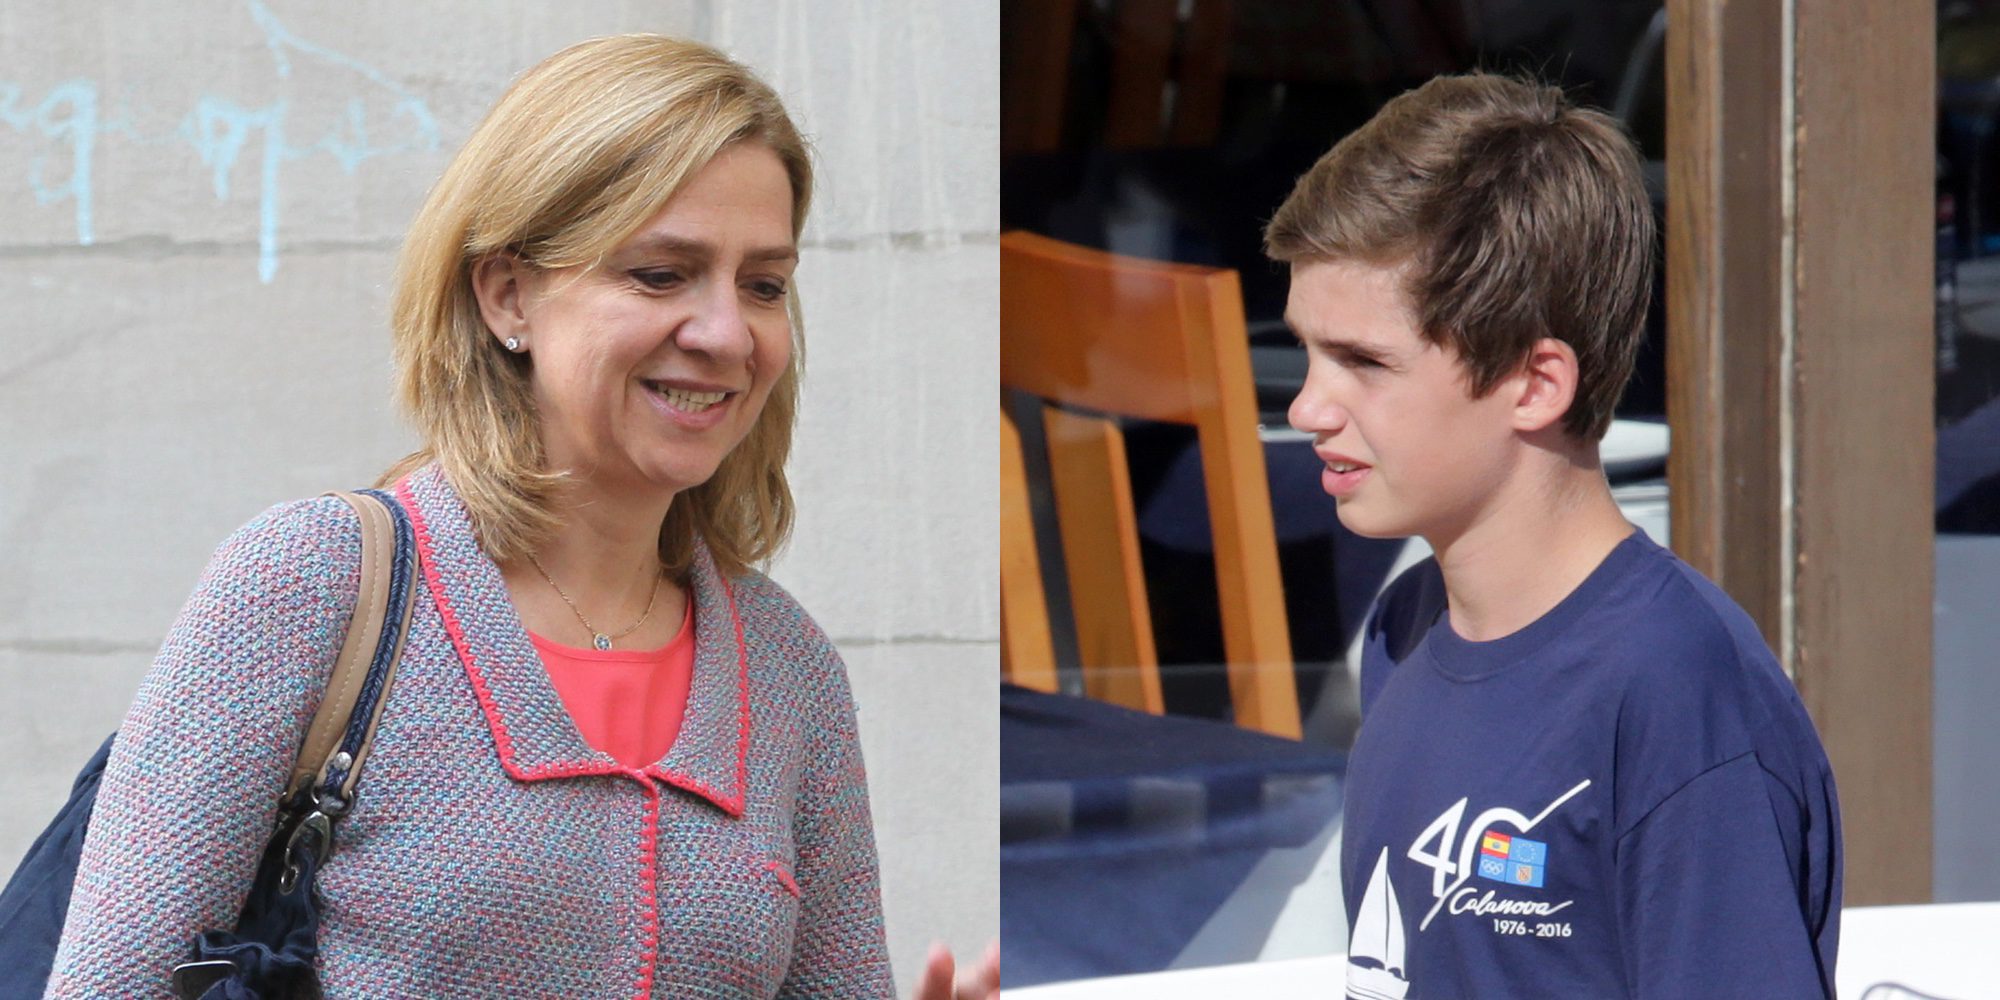 La Infanta Cristina busca colegio para su hijo Pablo Nicolás lejos de Suiza